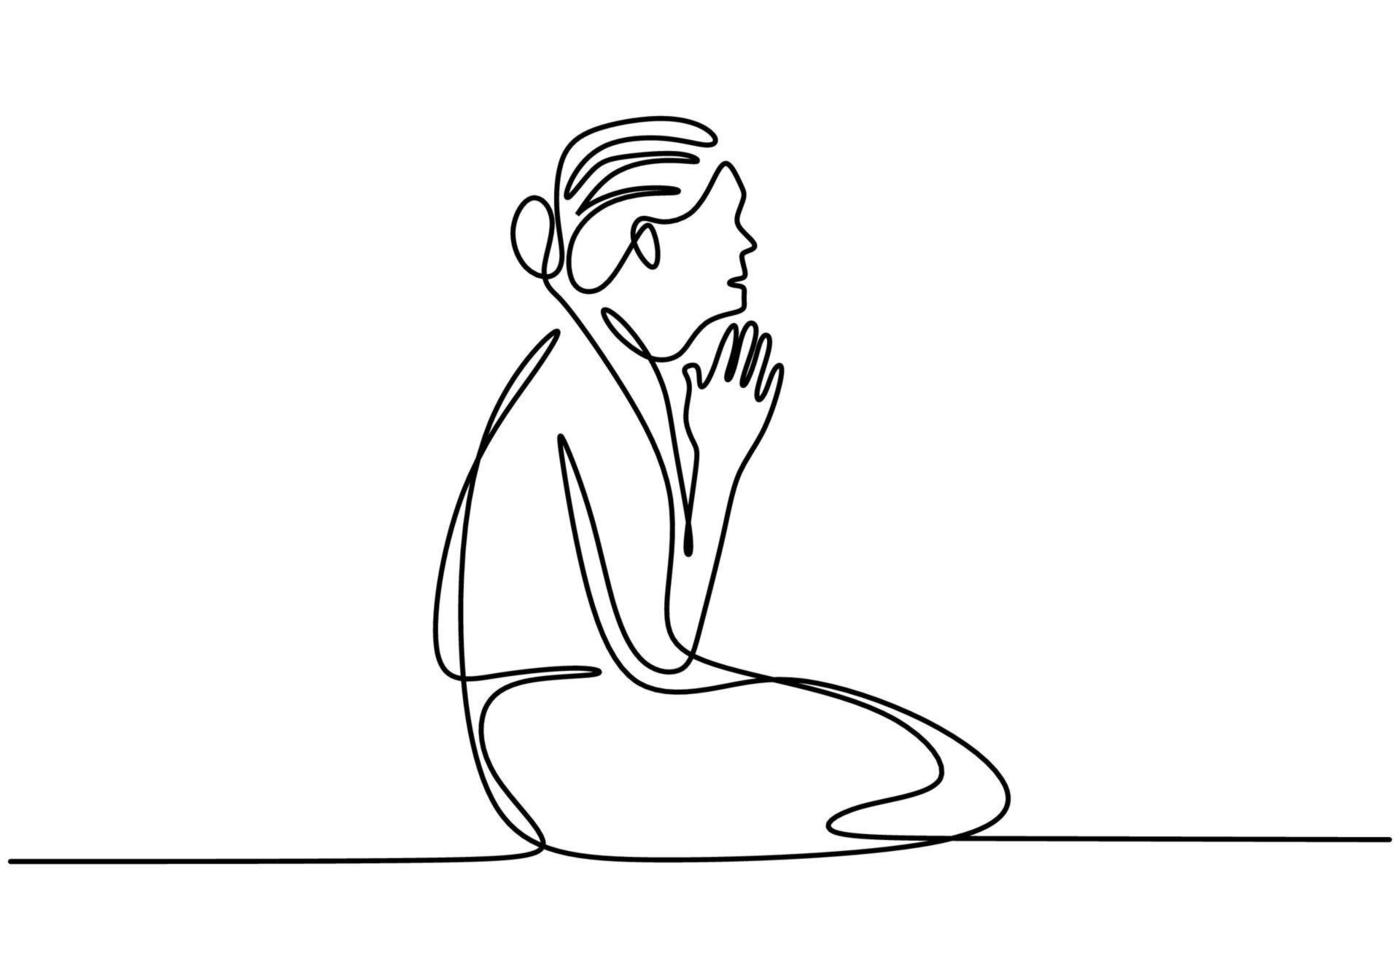 femmina seduta per terra e mani giunte insieme come se stesse pregando un disegno a tratteggio continuo isolato su sfondo bianco. mani giunte nel concetto di preghiera per la fede. illustrazione vettoriale